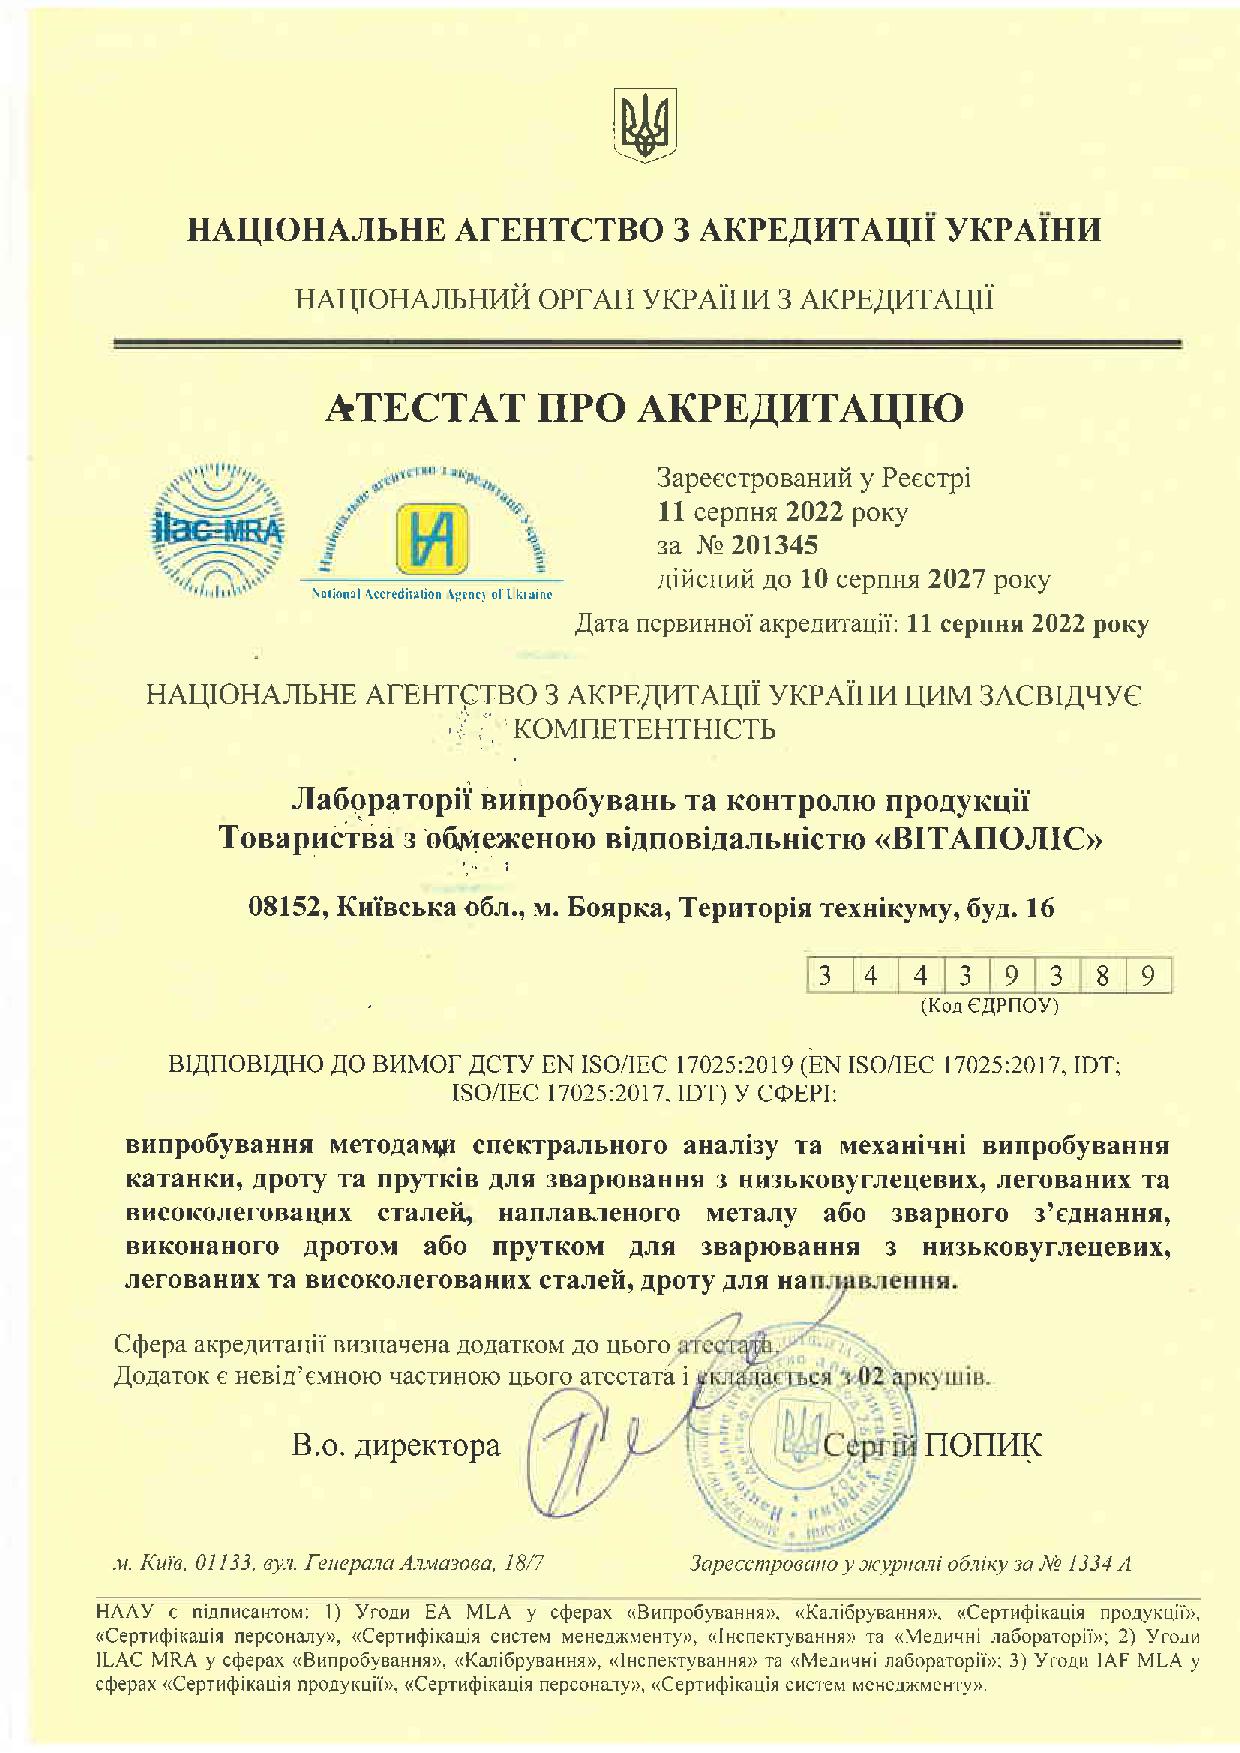 Сертификат про акредитацию